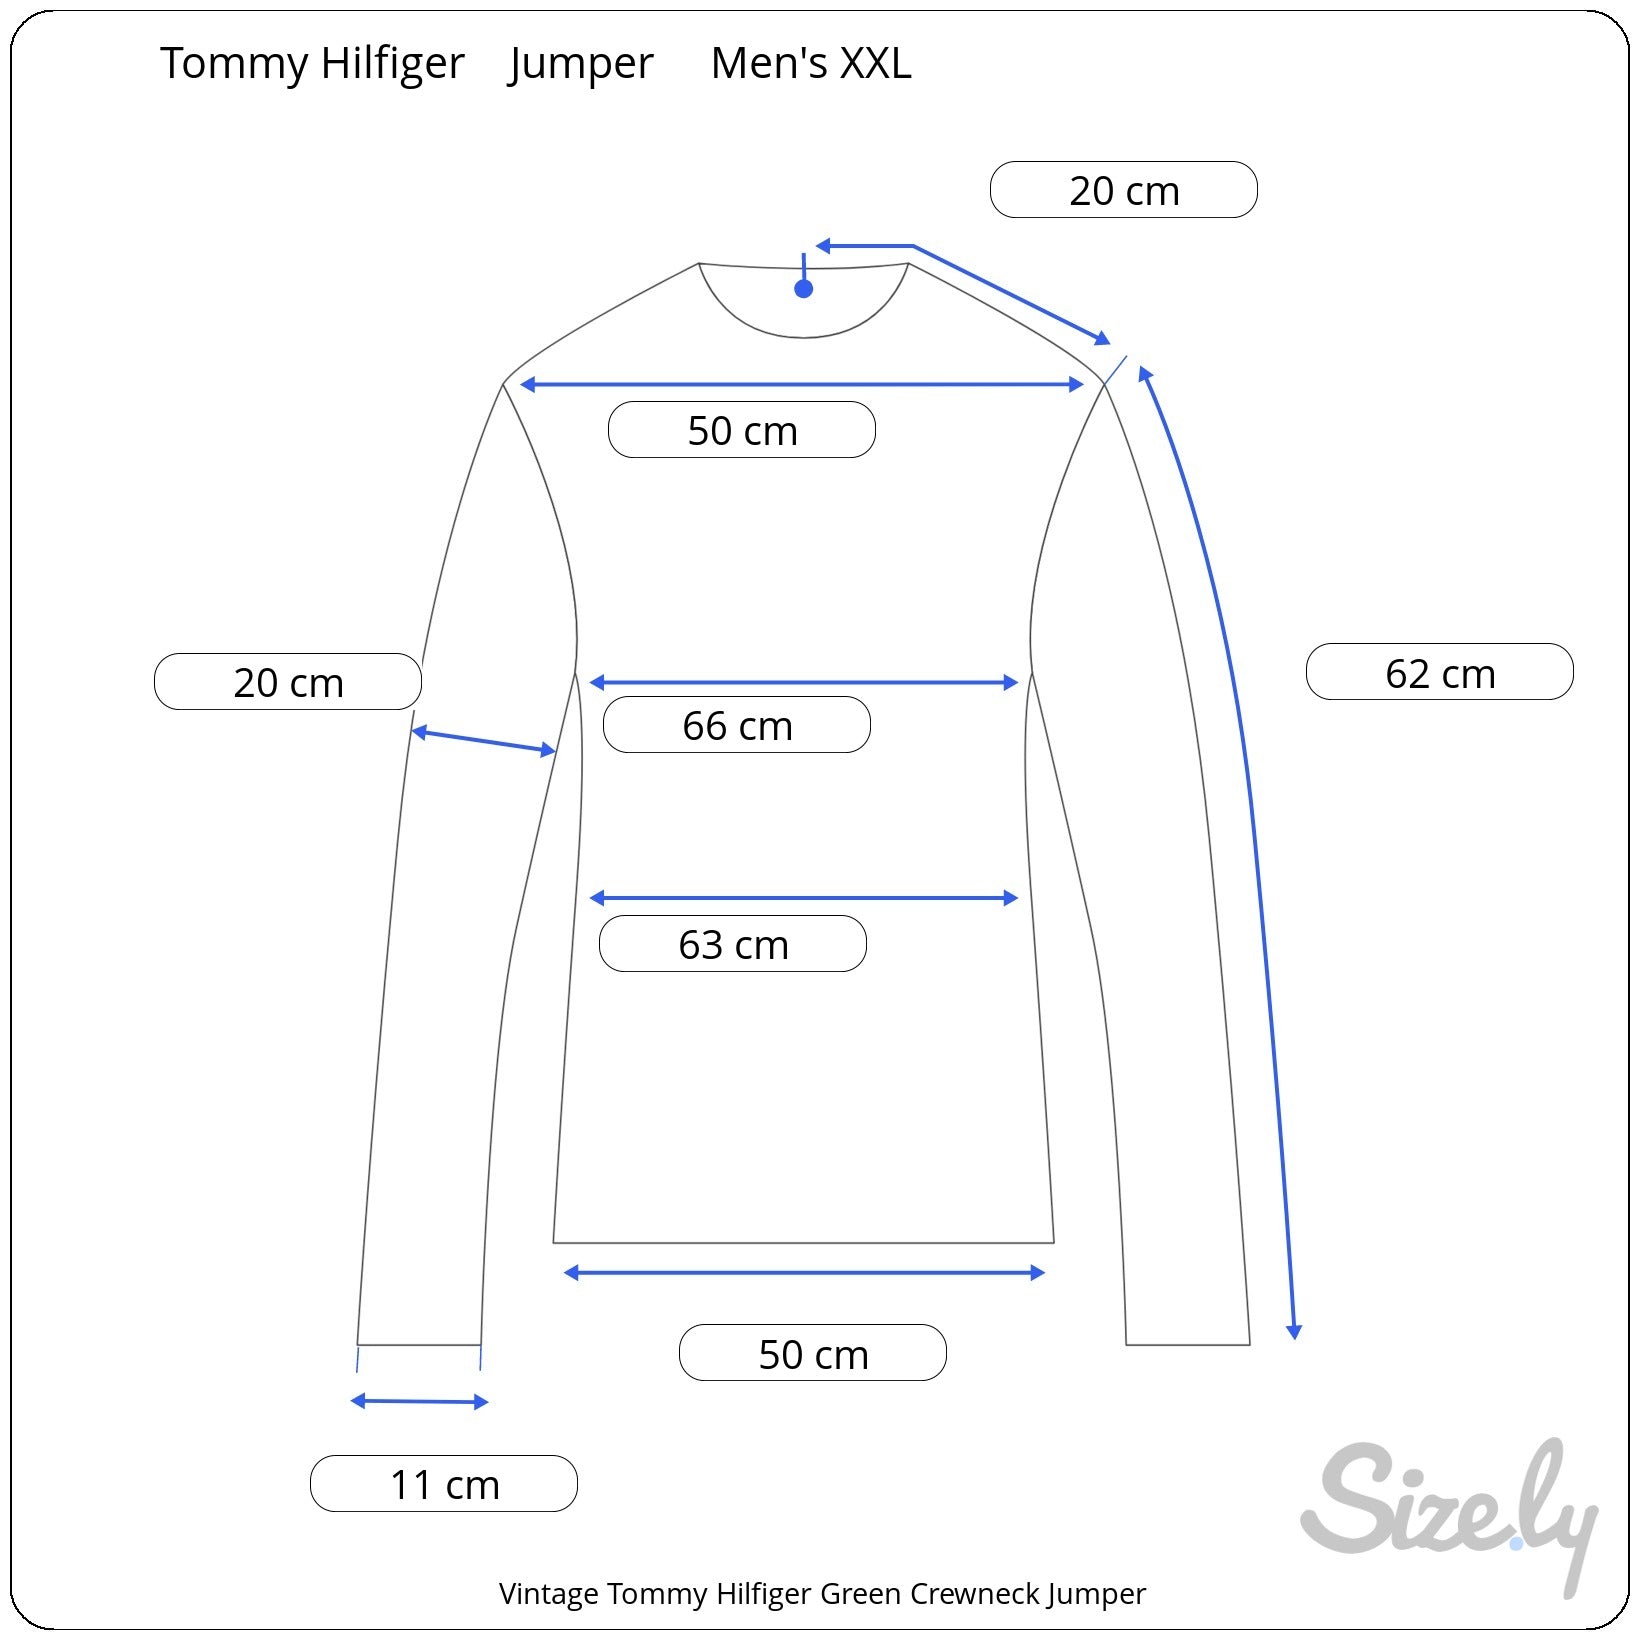 Vintage Tommy Hilfiger Green Crewneck Jumper measurements